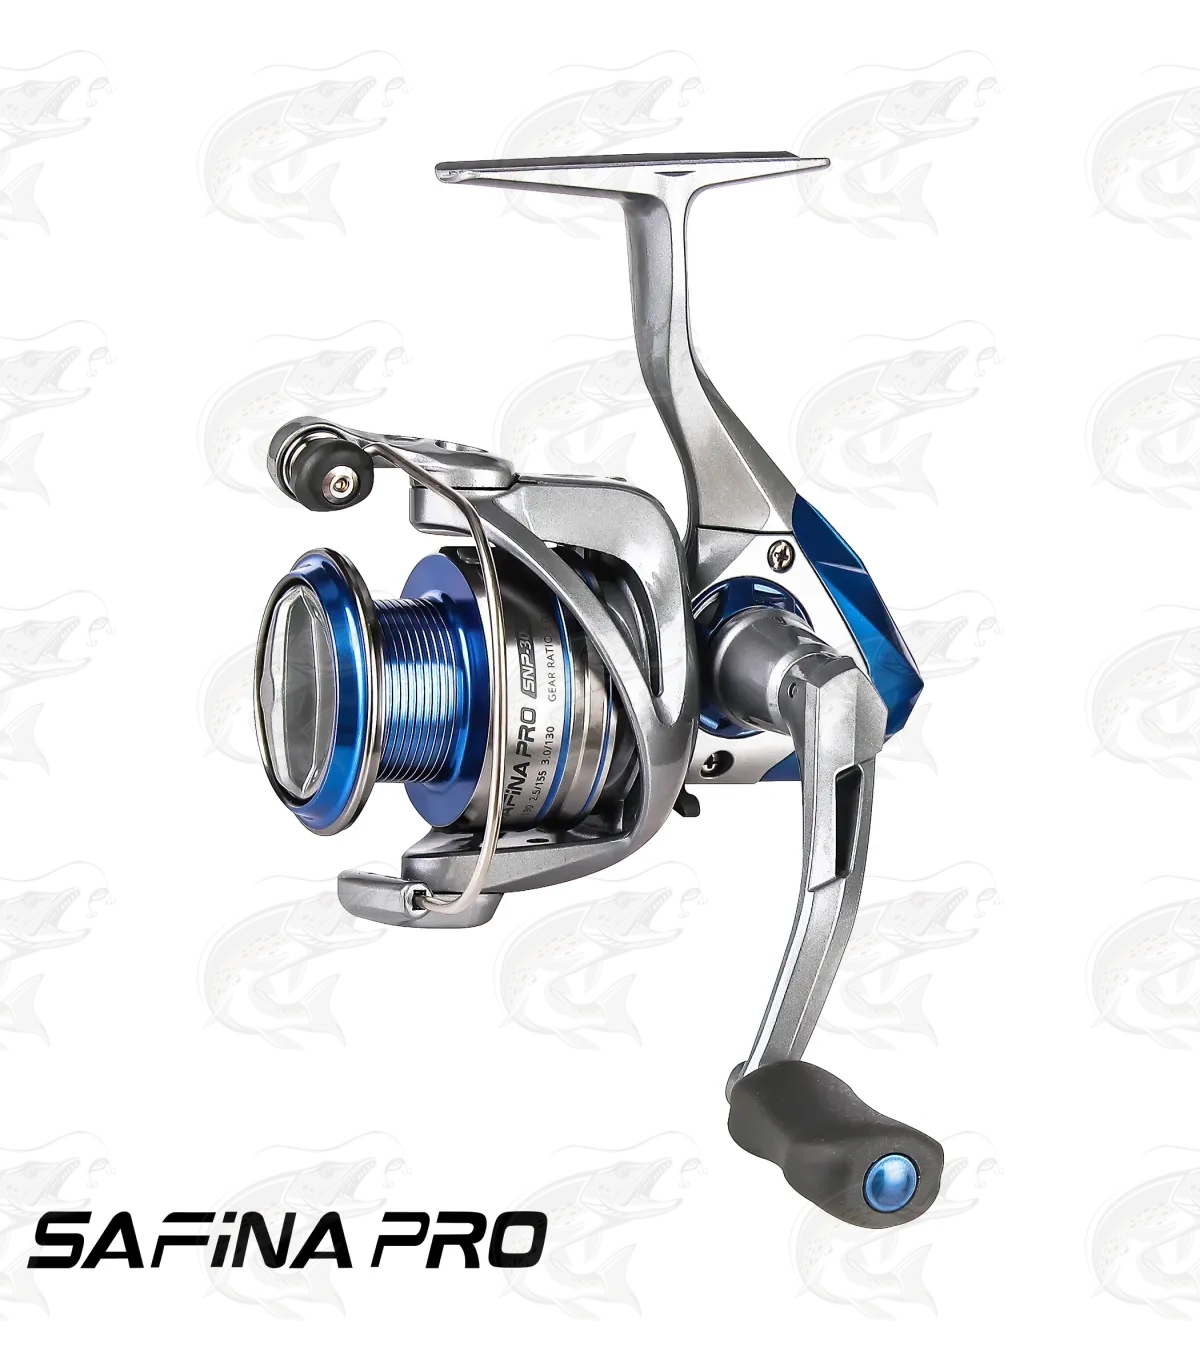 Okuma Safina Pro spinning reel